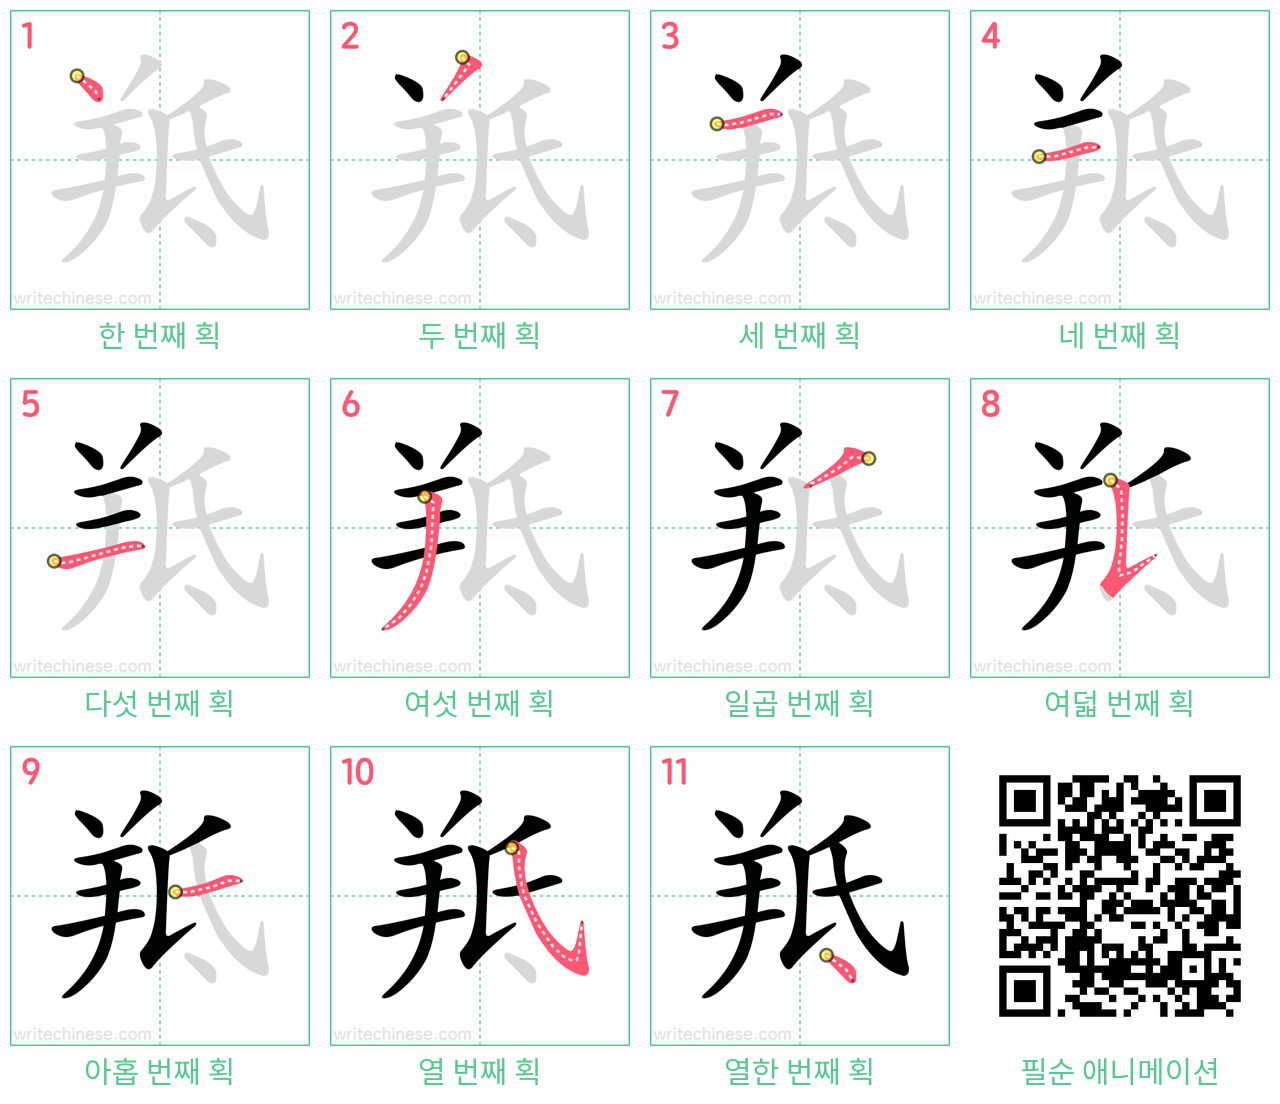 羝 step-by-step stroke order diagrams